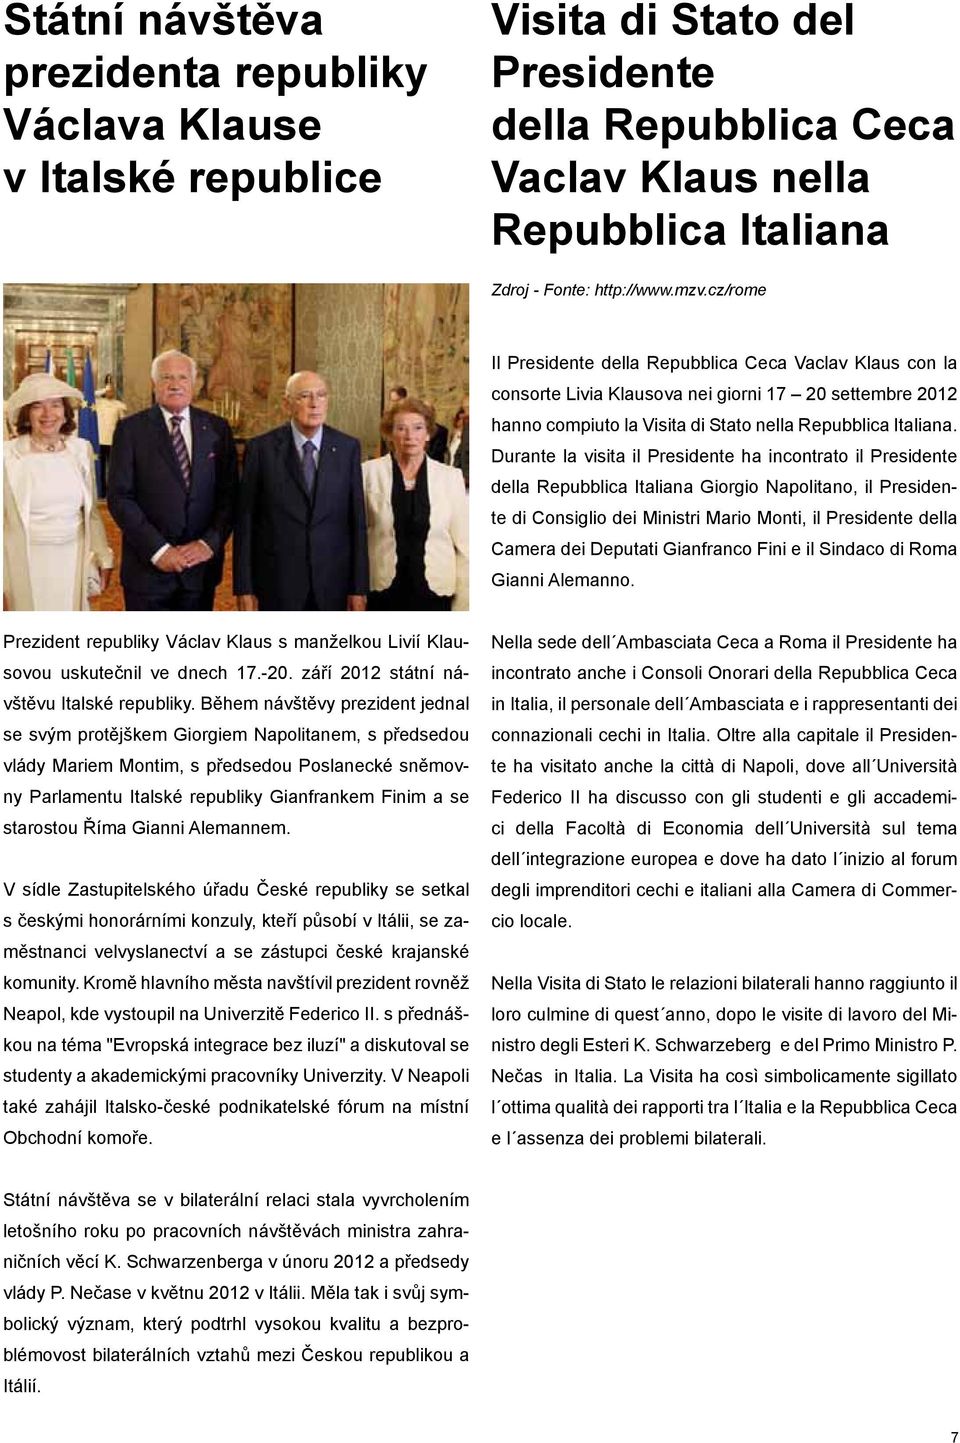 Durante la visita il Presidente ha incontrato il Presidente della Repubblica Italiana Giorgio Napolitano, il Presidente di Consiglio dei Ministri Mario Monti, il Presidente della Camera dei Deputati